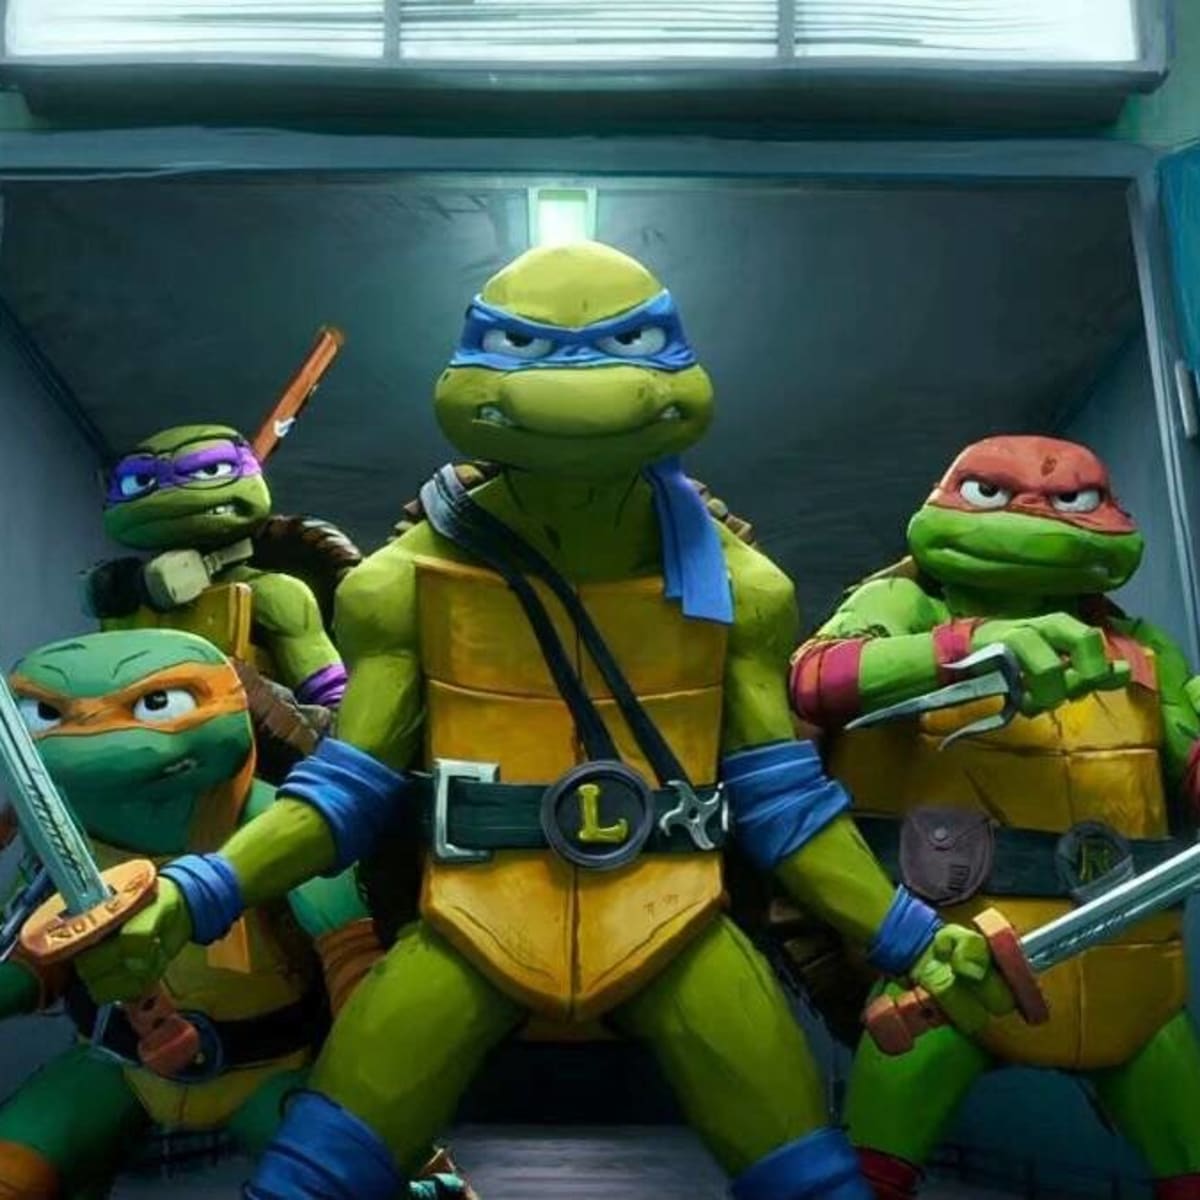 Teenage Mutant Ninja Turtles: Mutant Mayhem 2 Sets Release Date